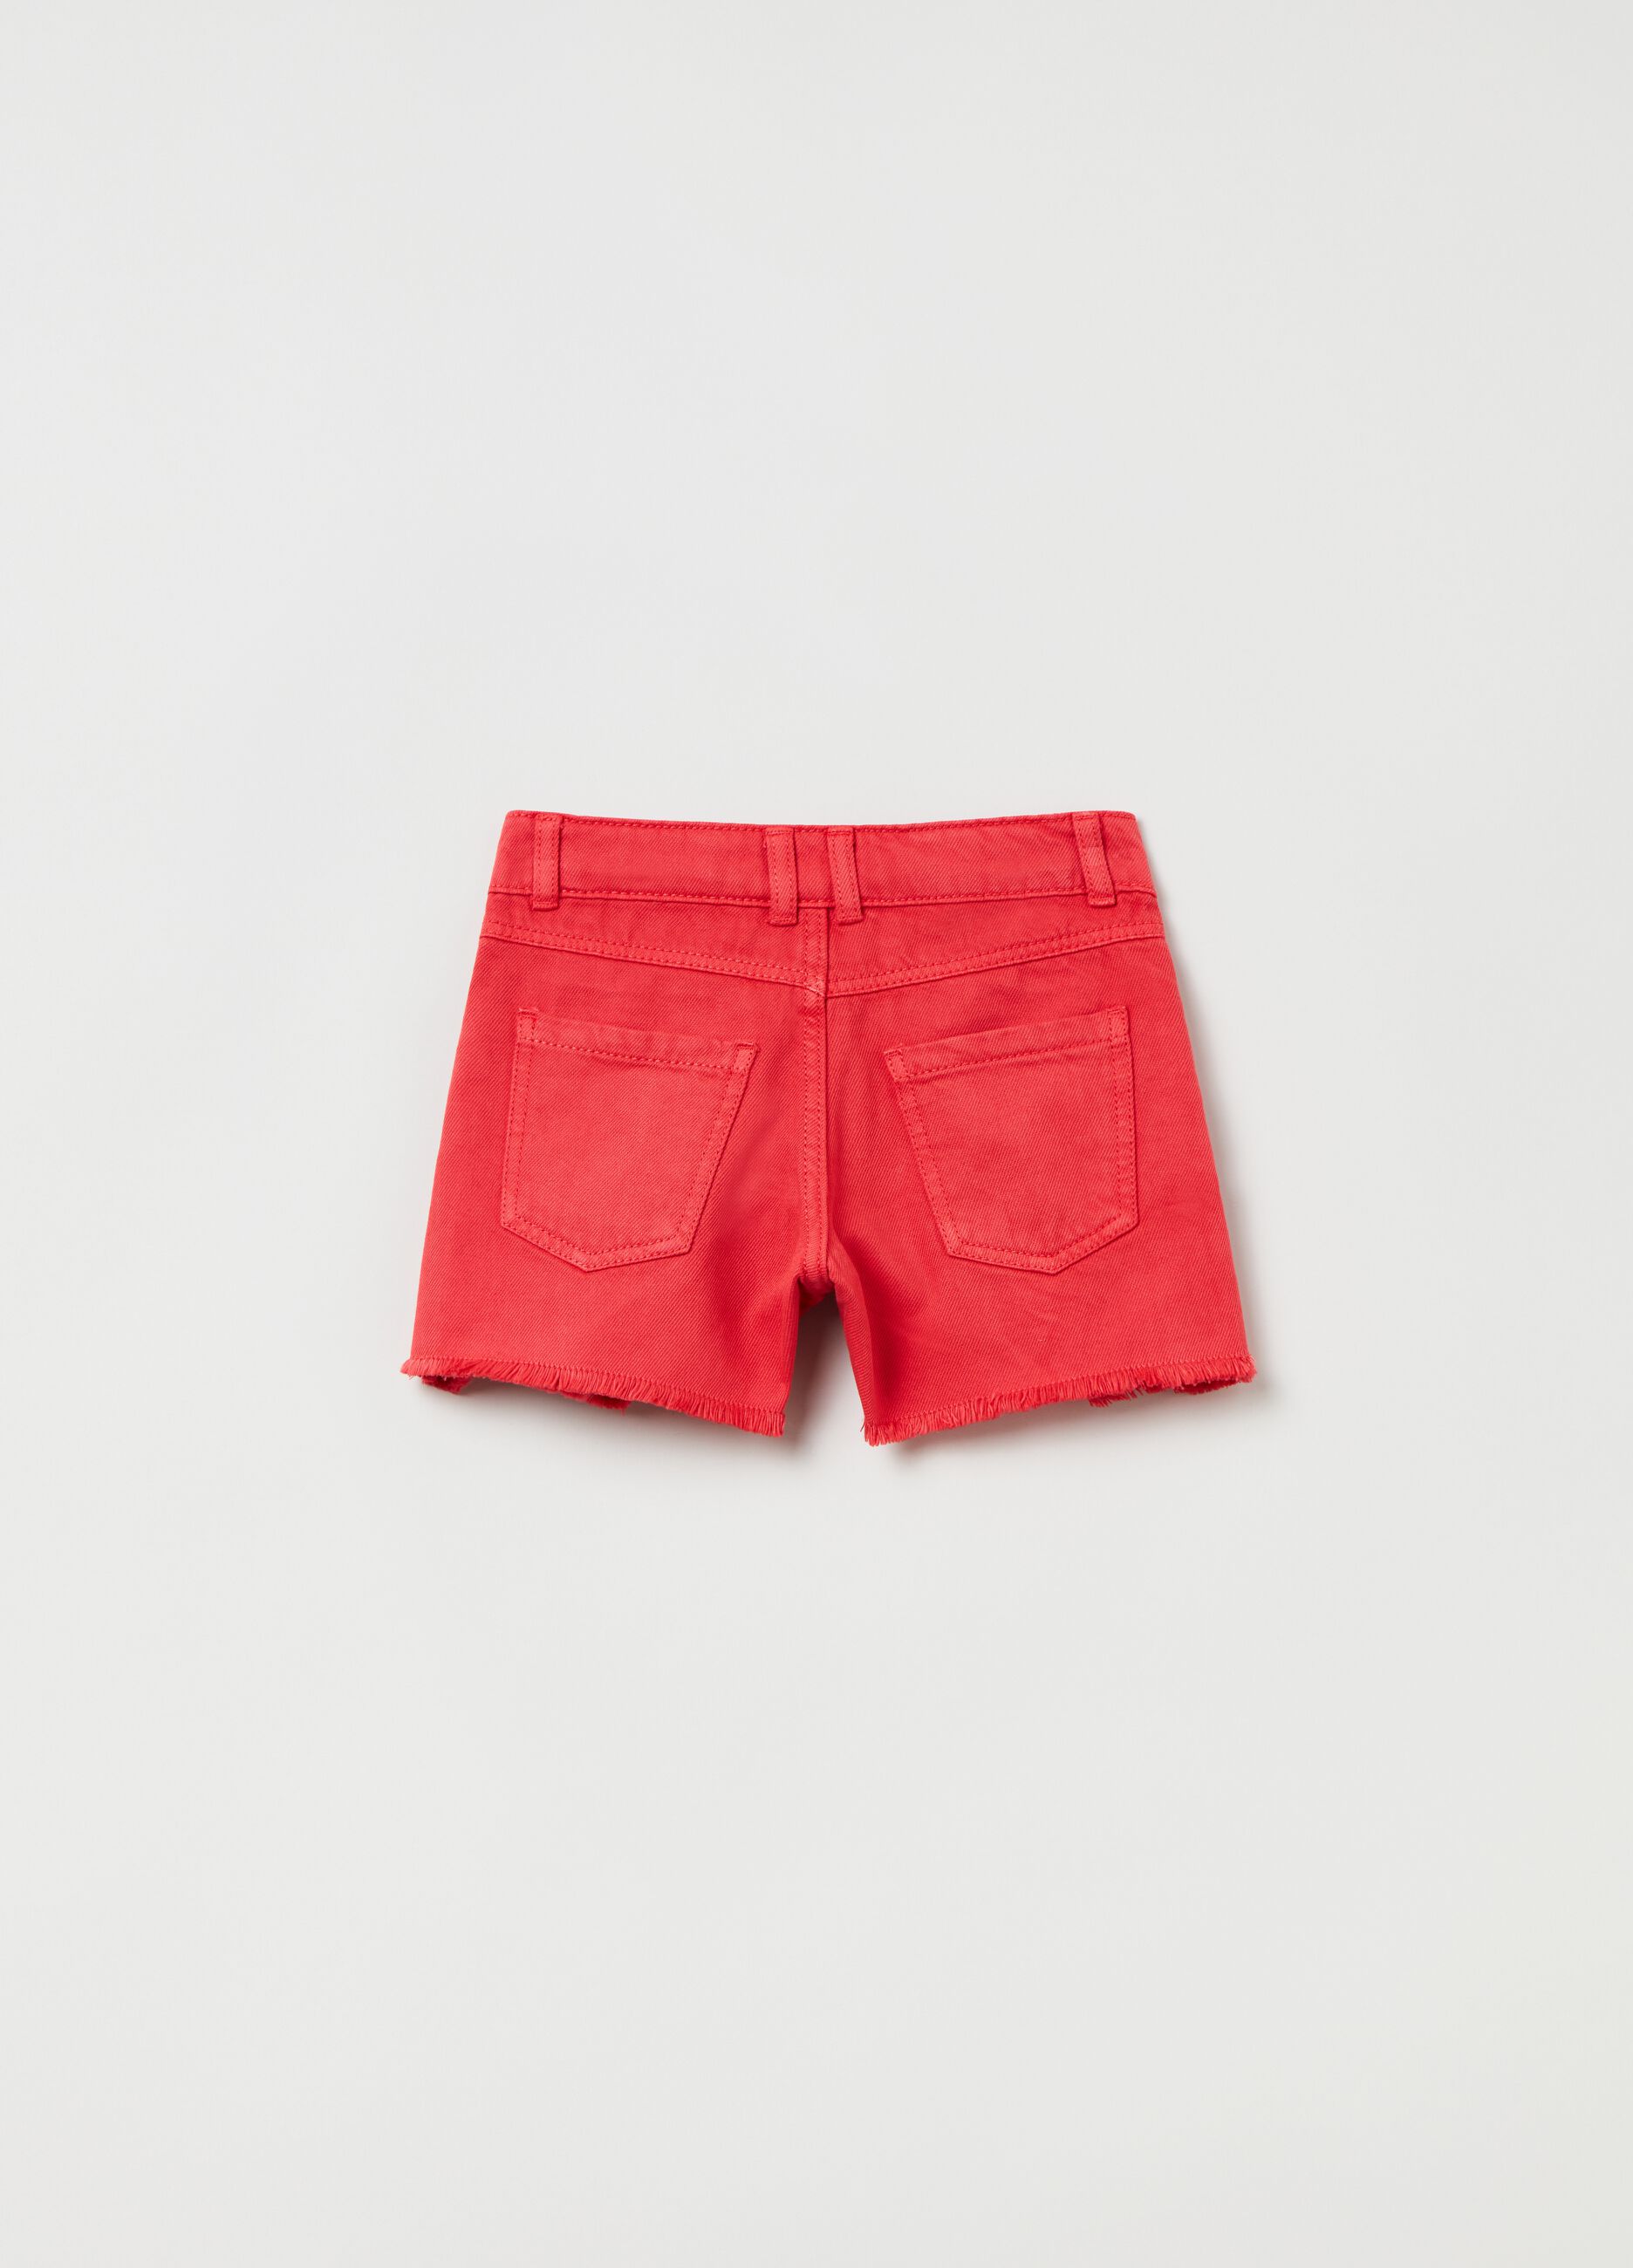 Denim shorts with fringed edging